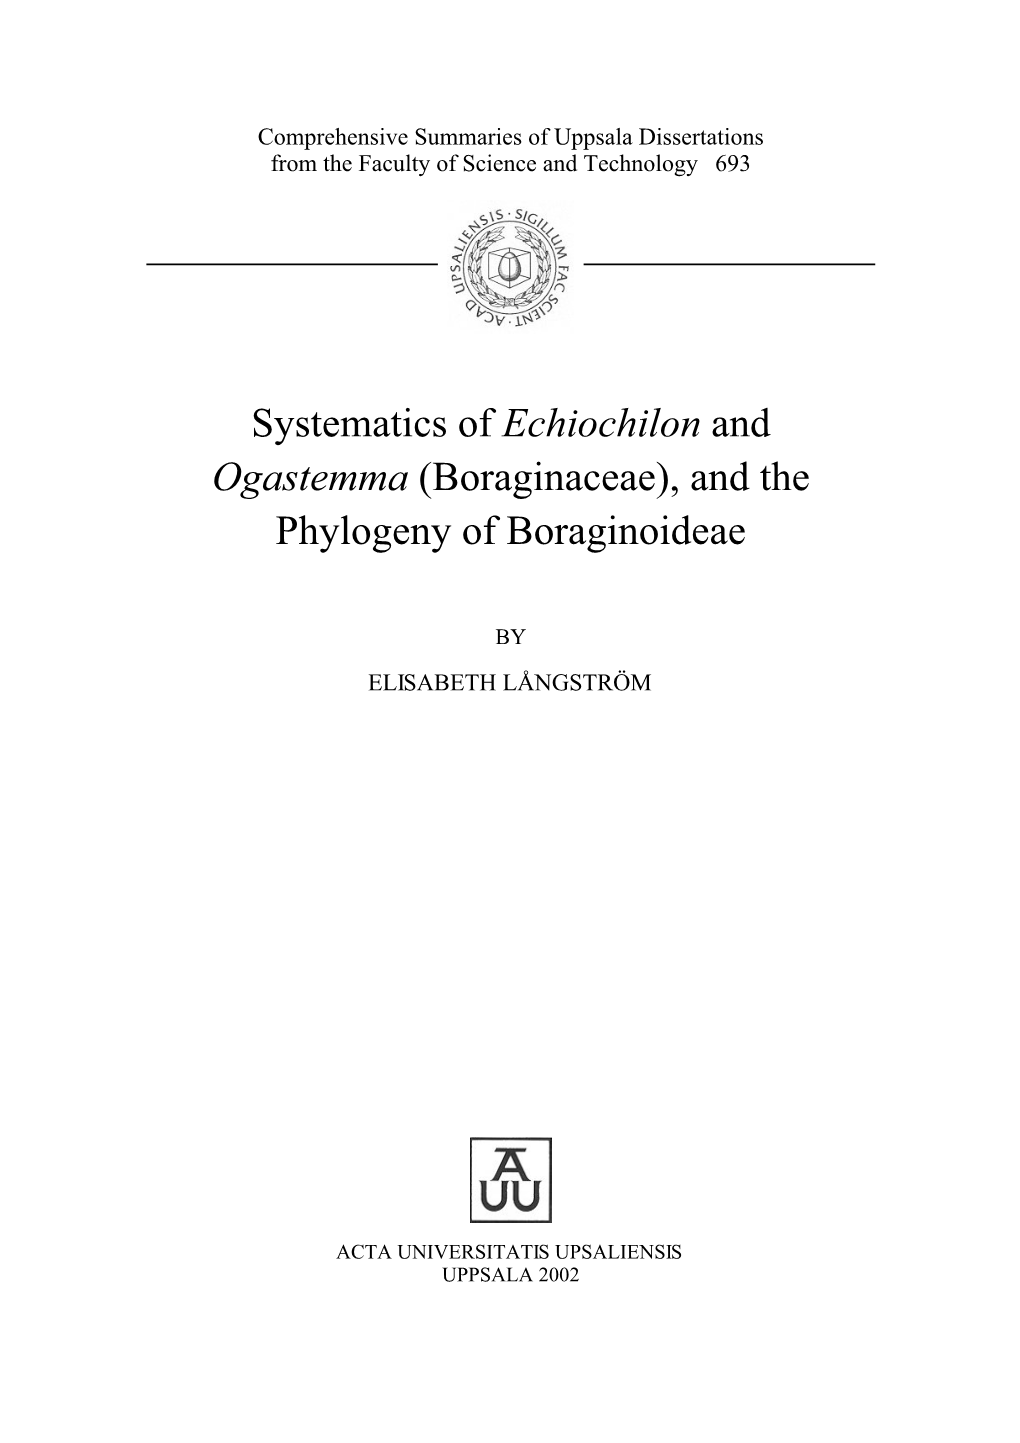 Boraginaceae), and the Phylogeny of Boraginoideae